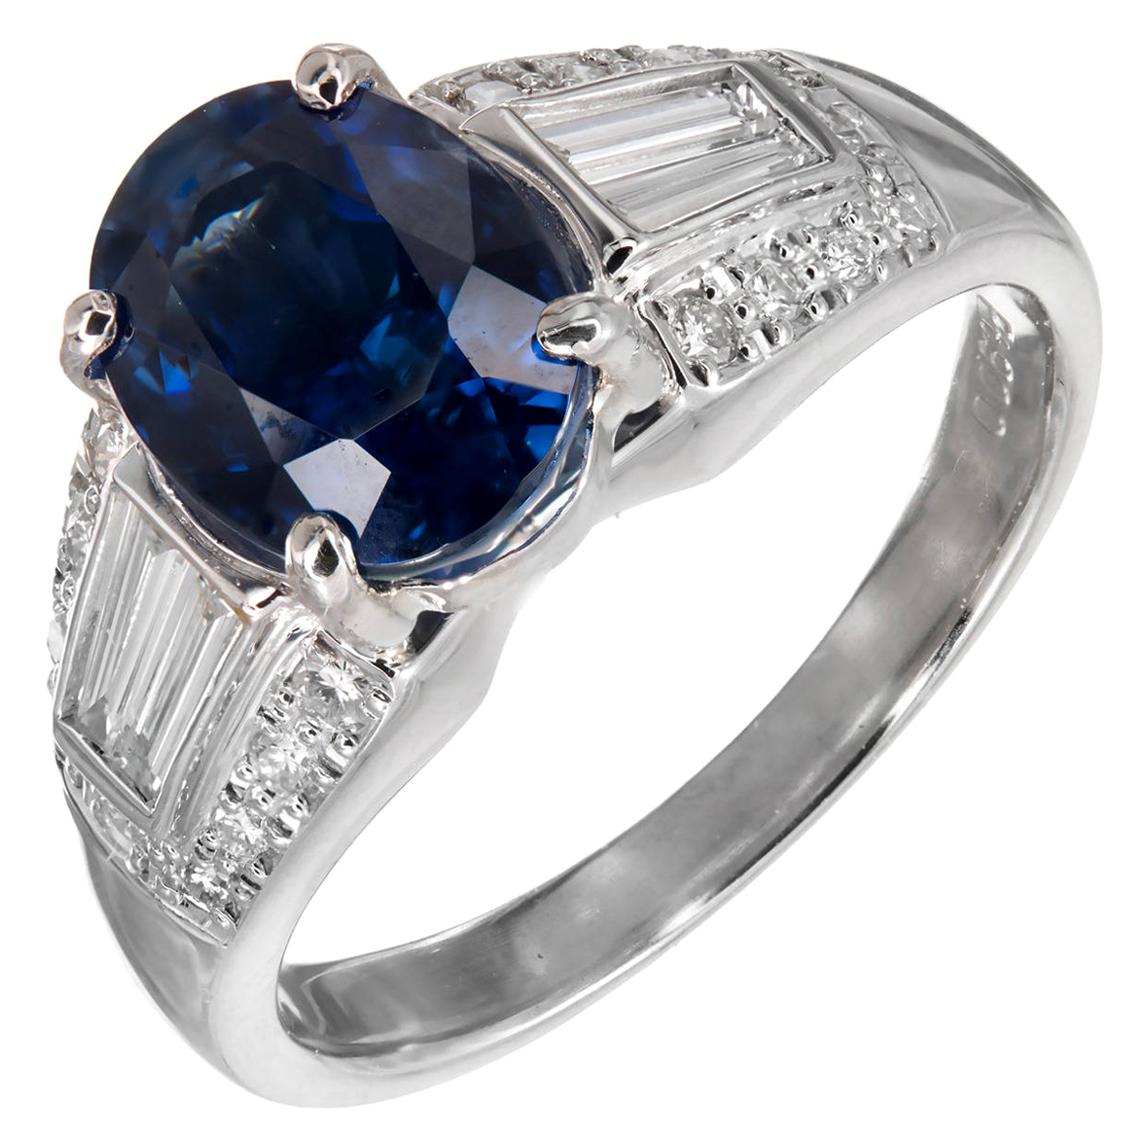 Platin-Verlobungsring mit GIA-zertifiziertem 3,19 Karat blauem Saphir und Diamant